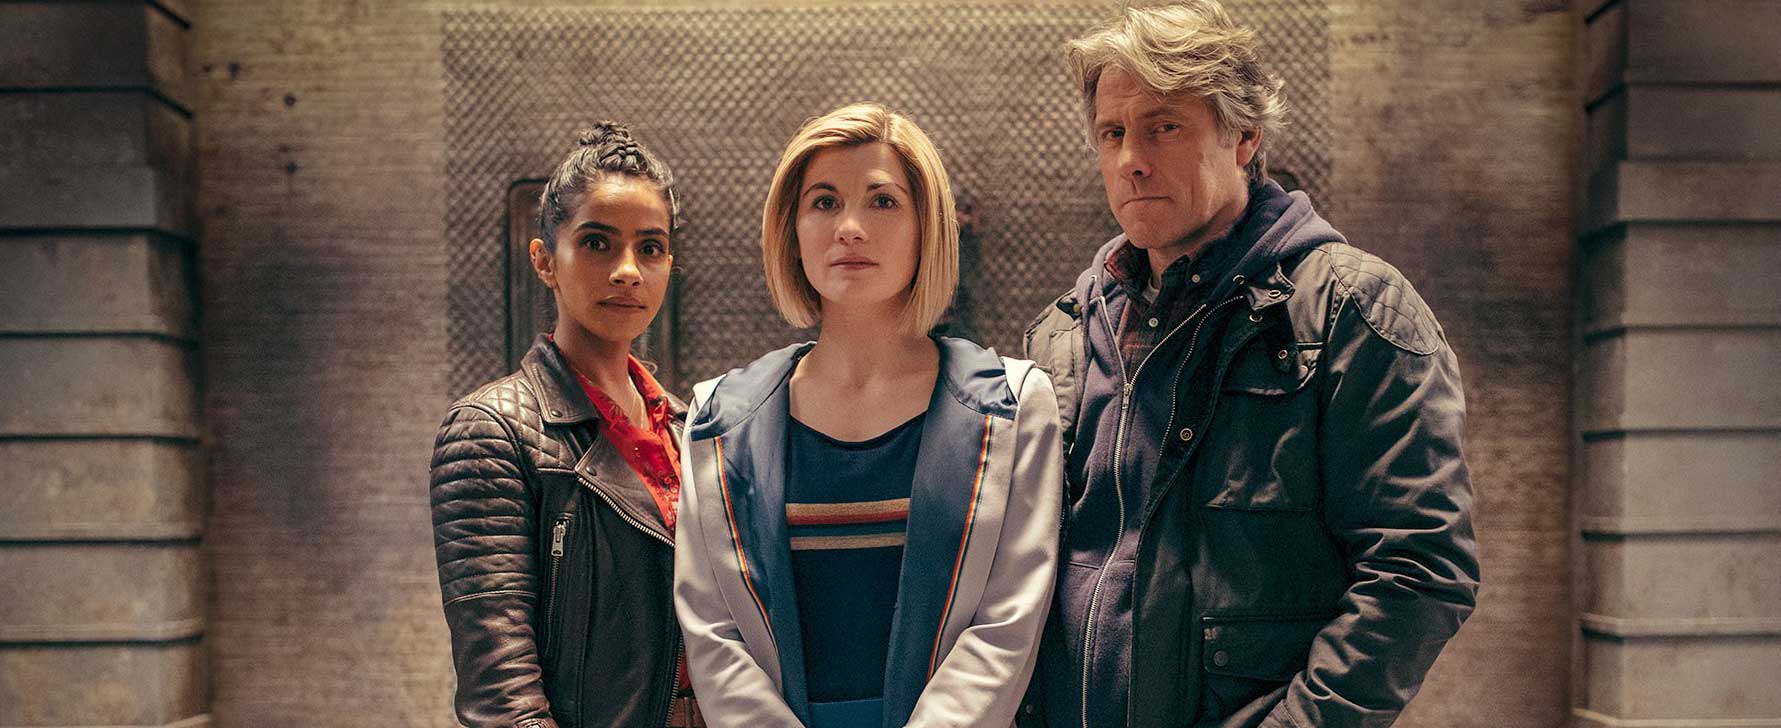 Doctor Who repart enfin en tournage, pour une saison 13 raccourcie